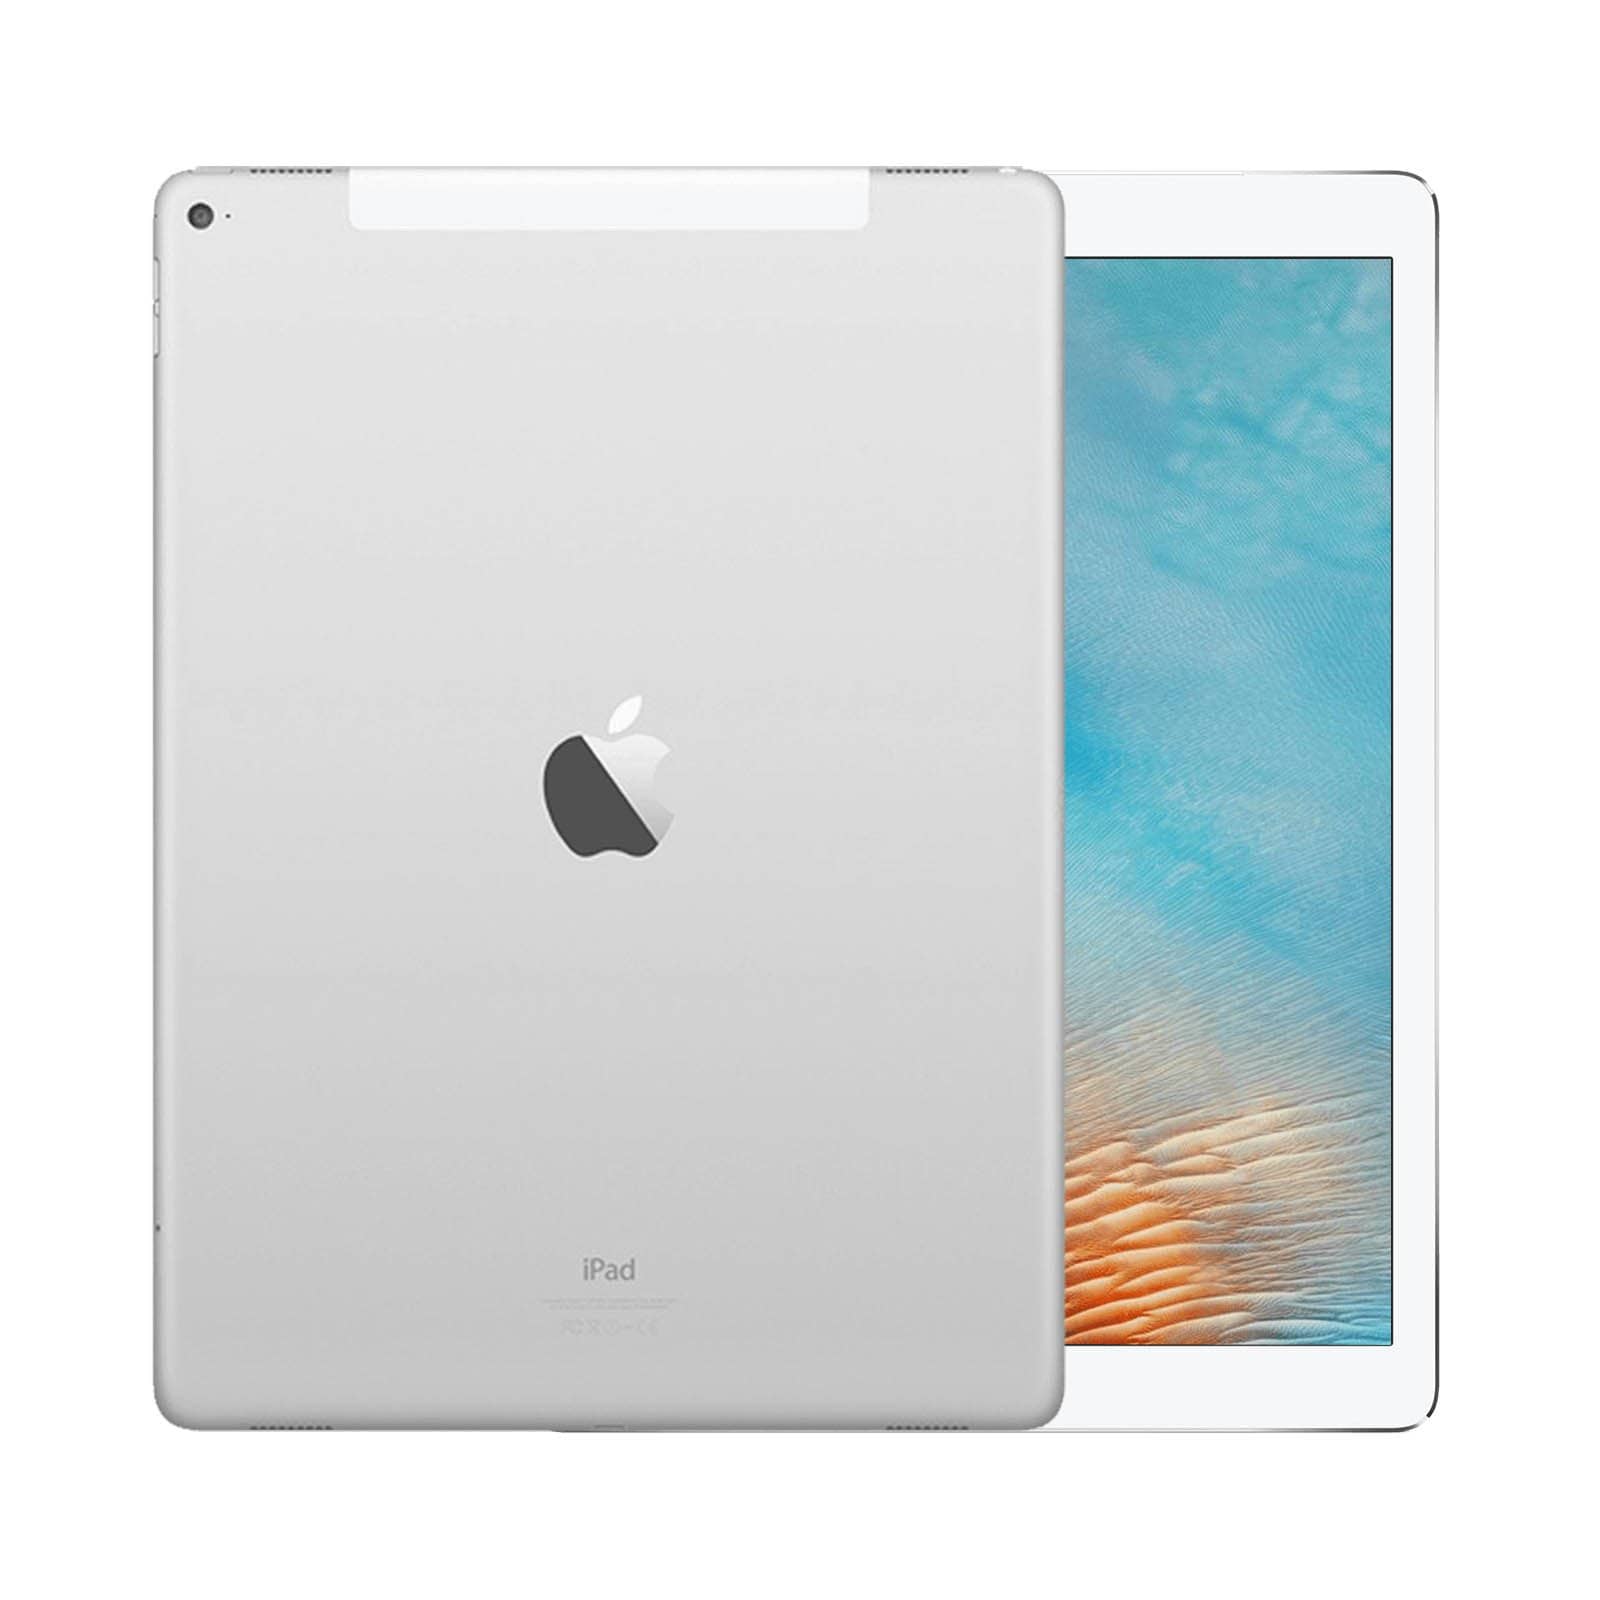 iPad Pro 12.9 Inch 3rd Gen 256GB Silver Good - WiFi 256GB Silver Good